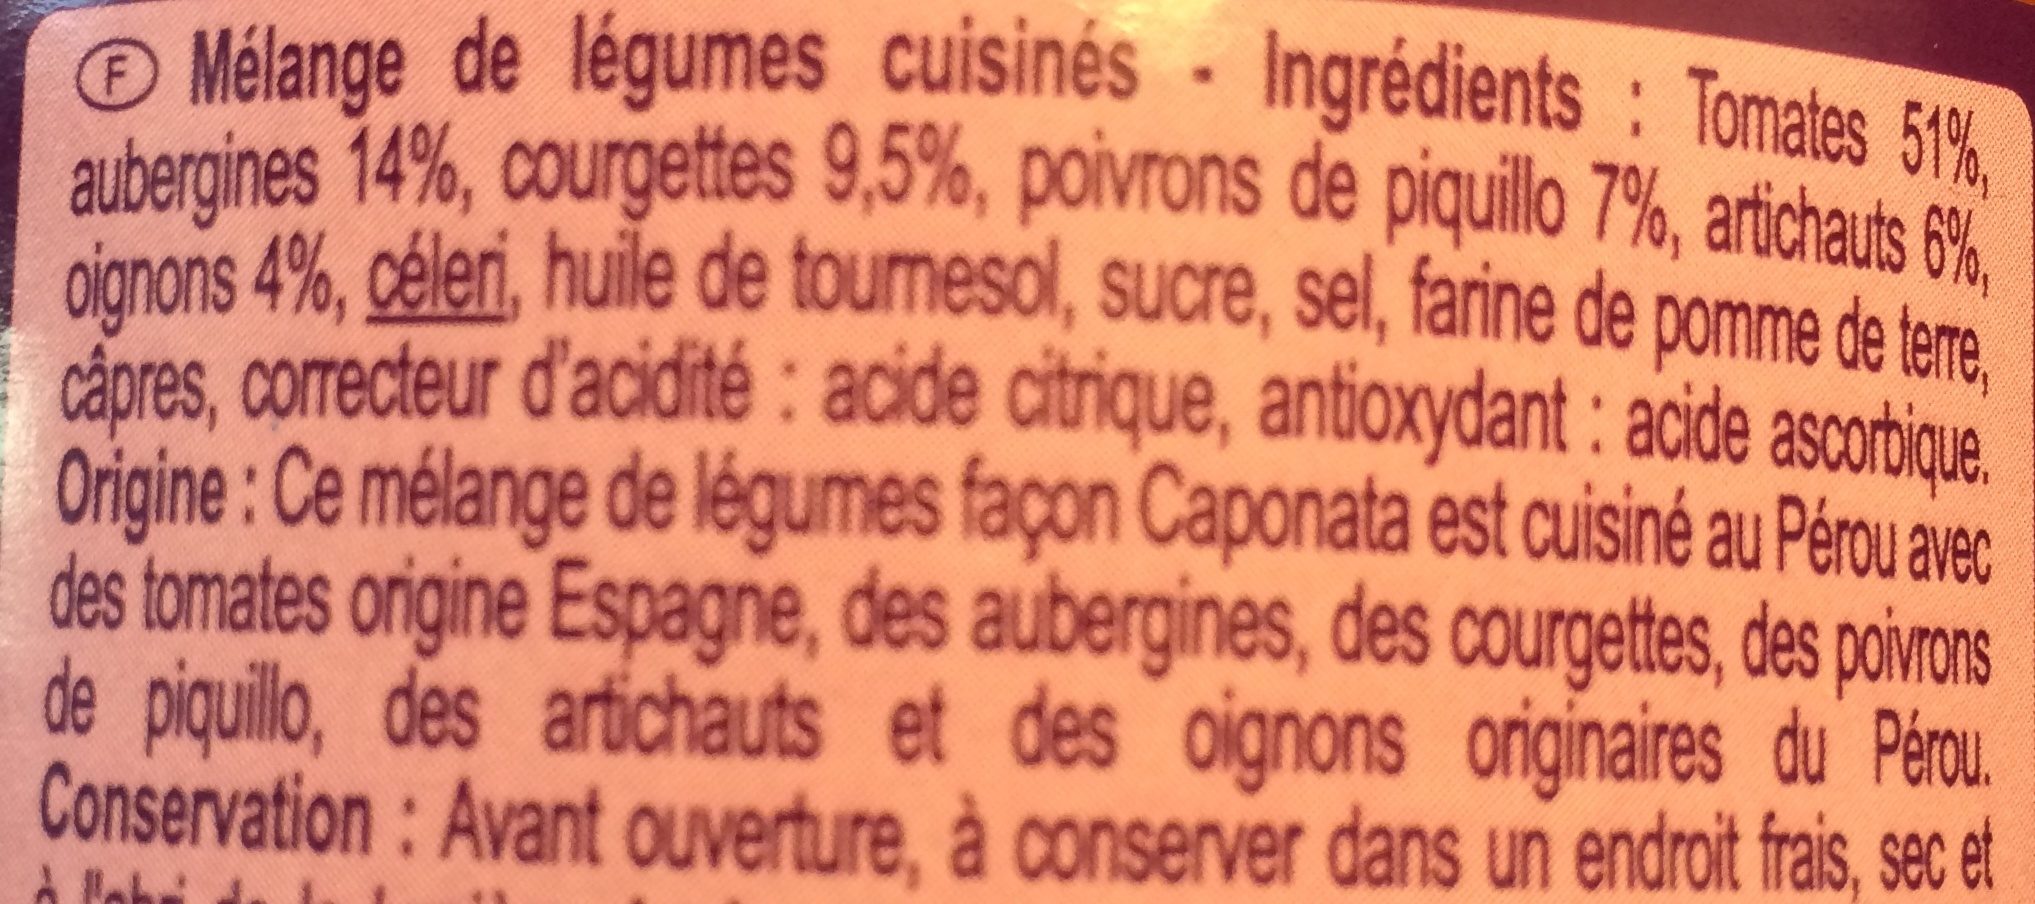 Caponata - légumes façon Groenten - Ingredients - fr